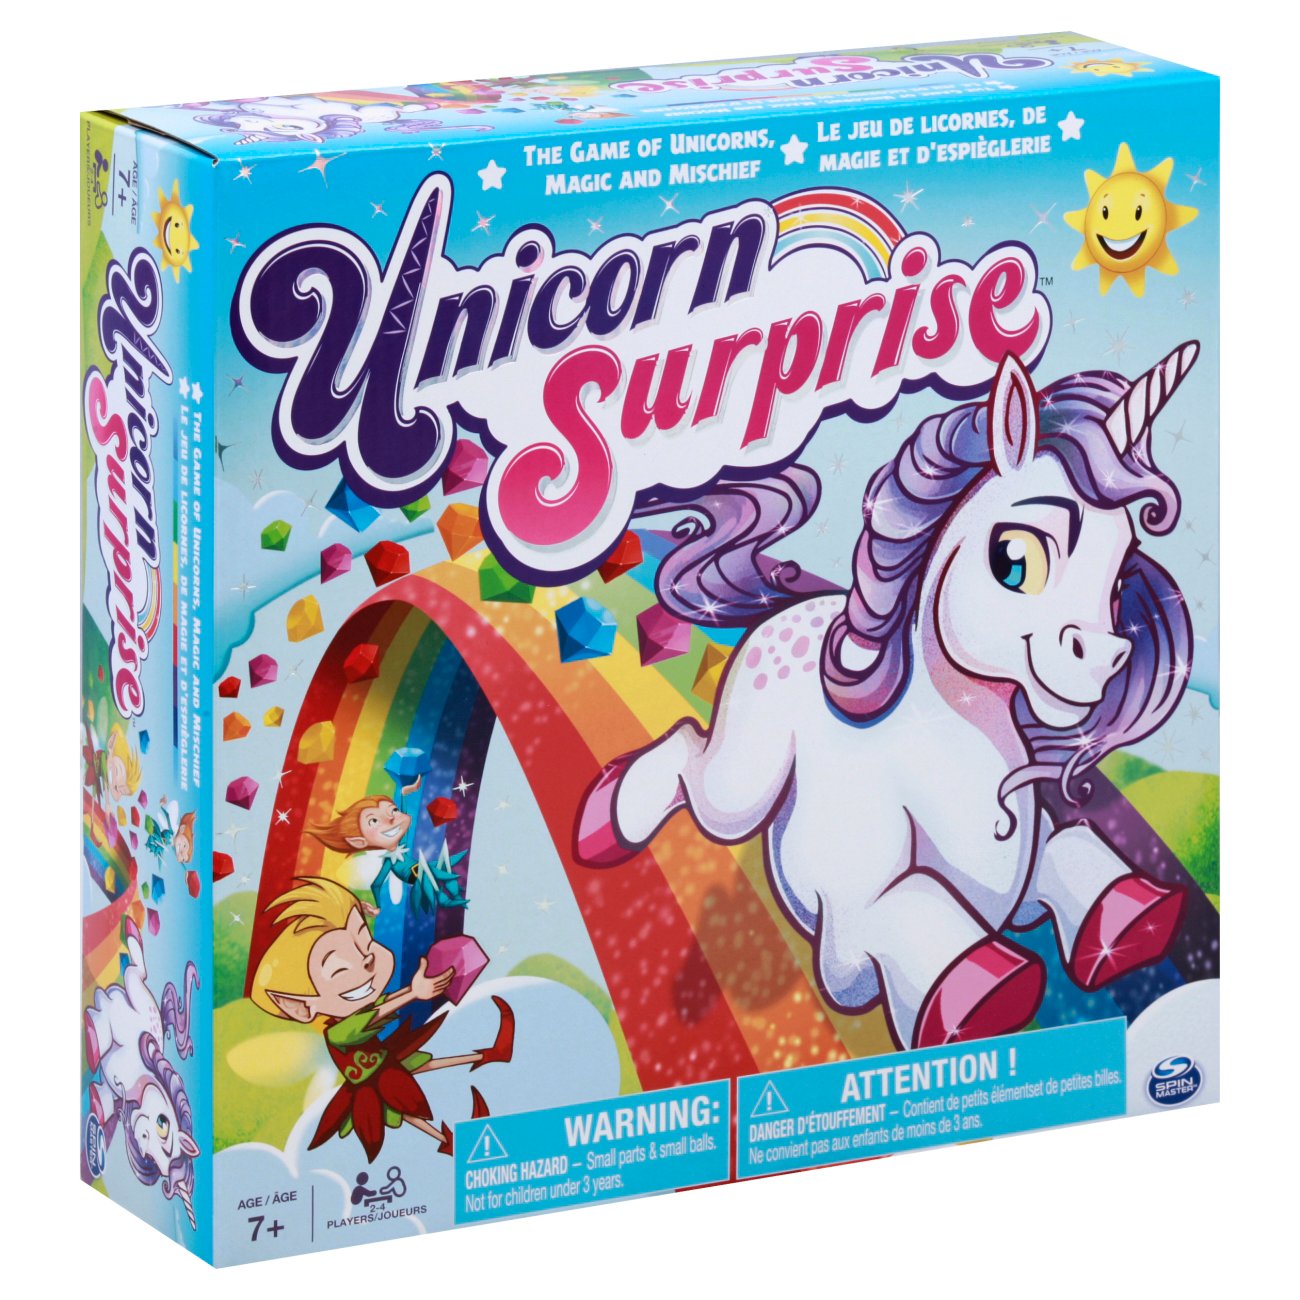 unicorn surprise game